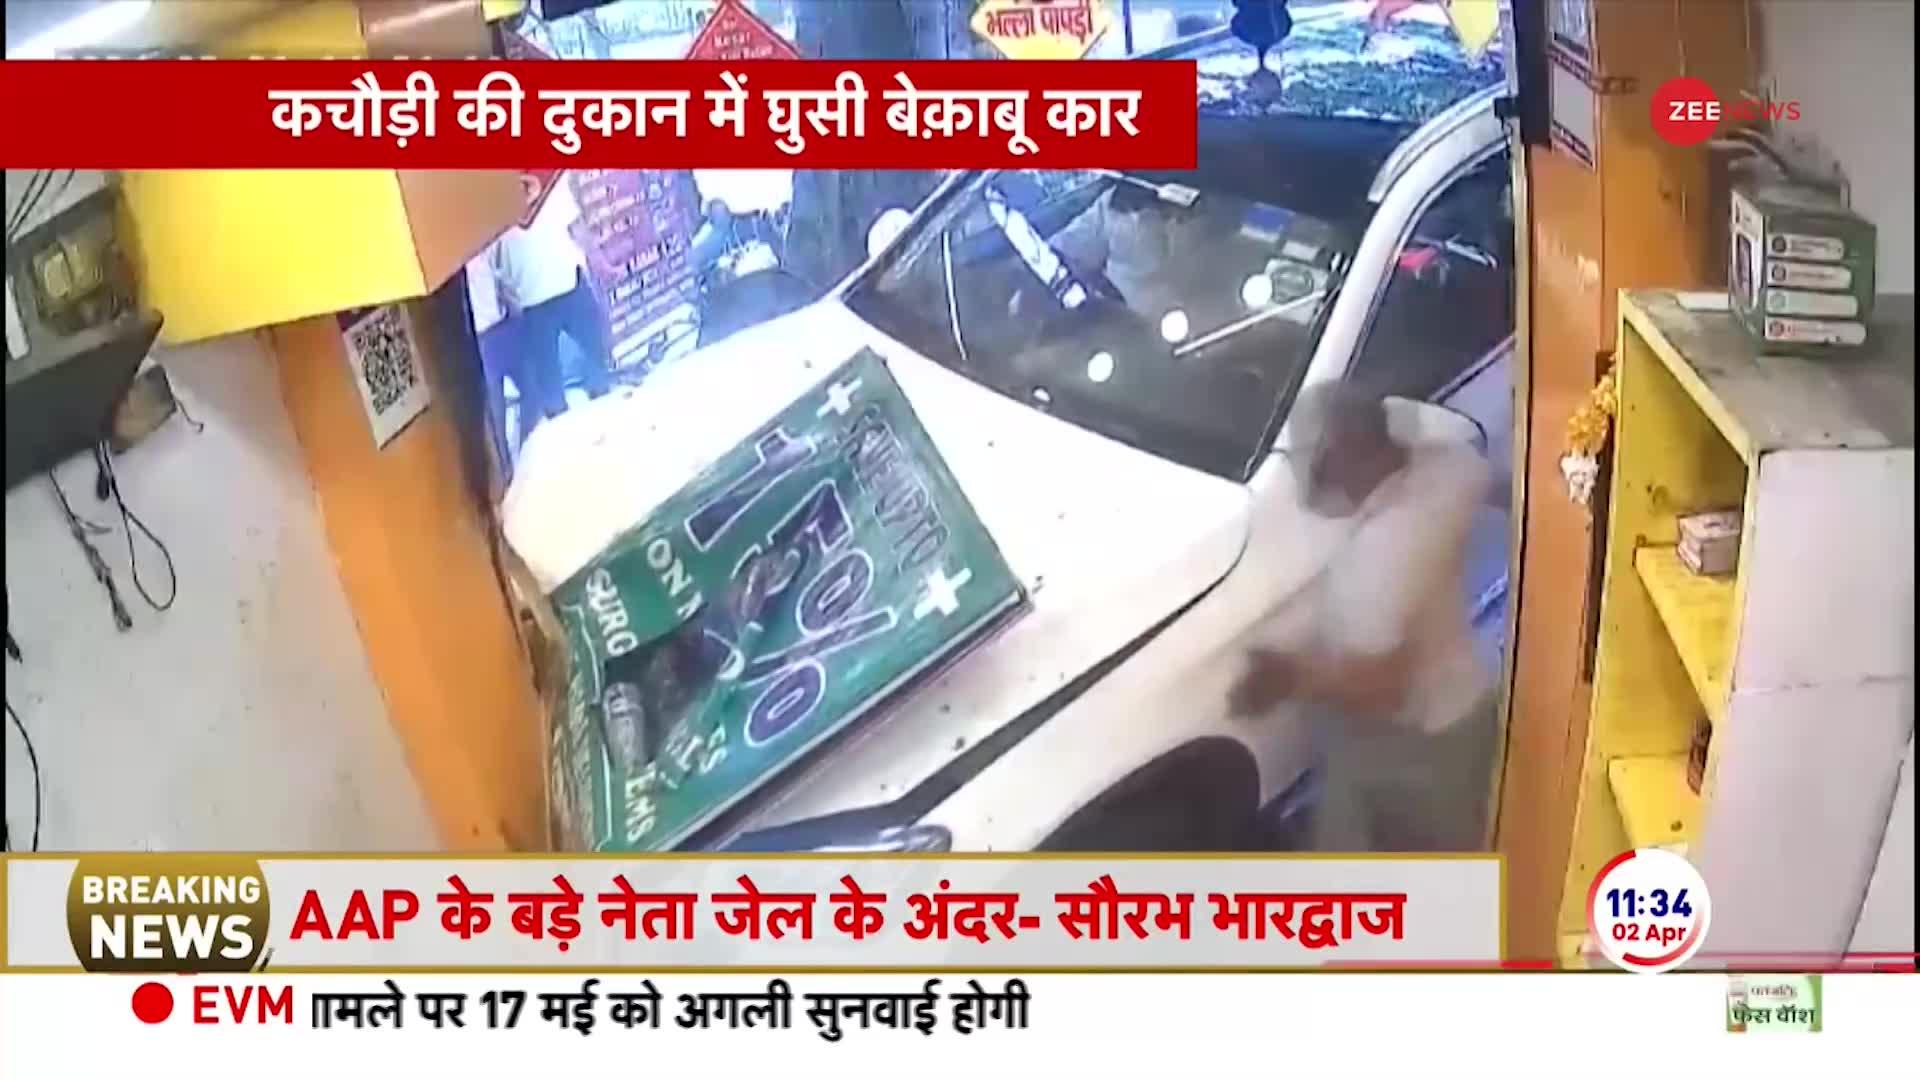 दिल्ली के सिविल लाइन में बेकाबू कार कचौड़ी की दुकान में घुसी